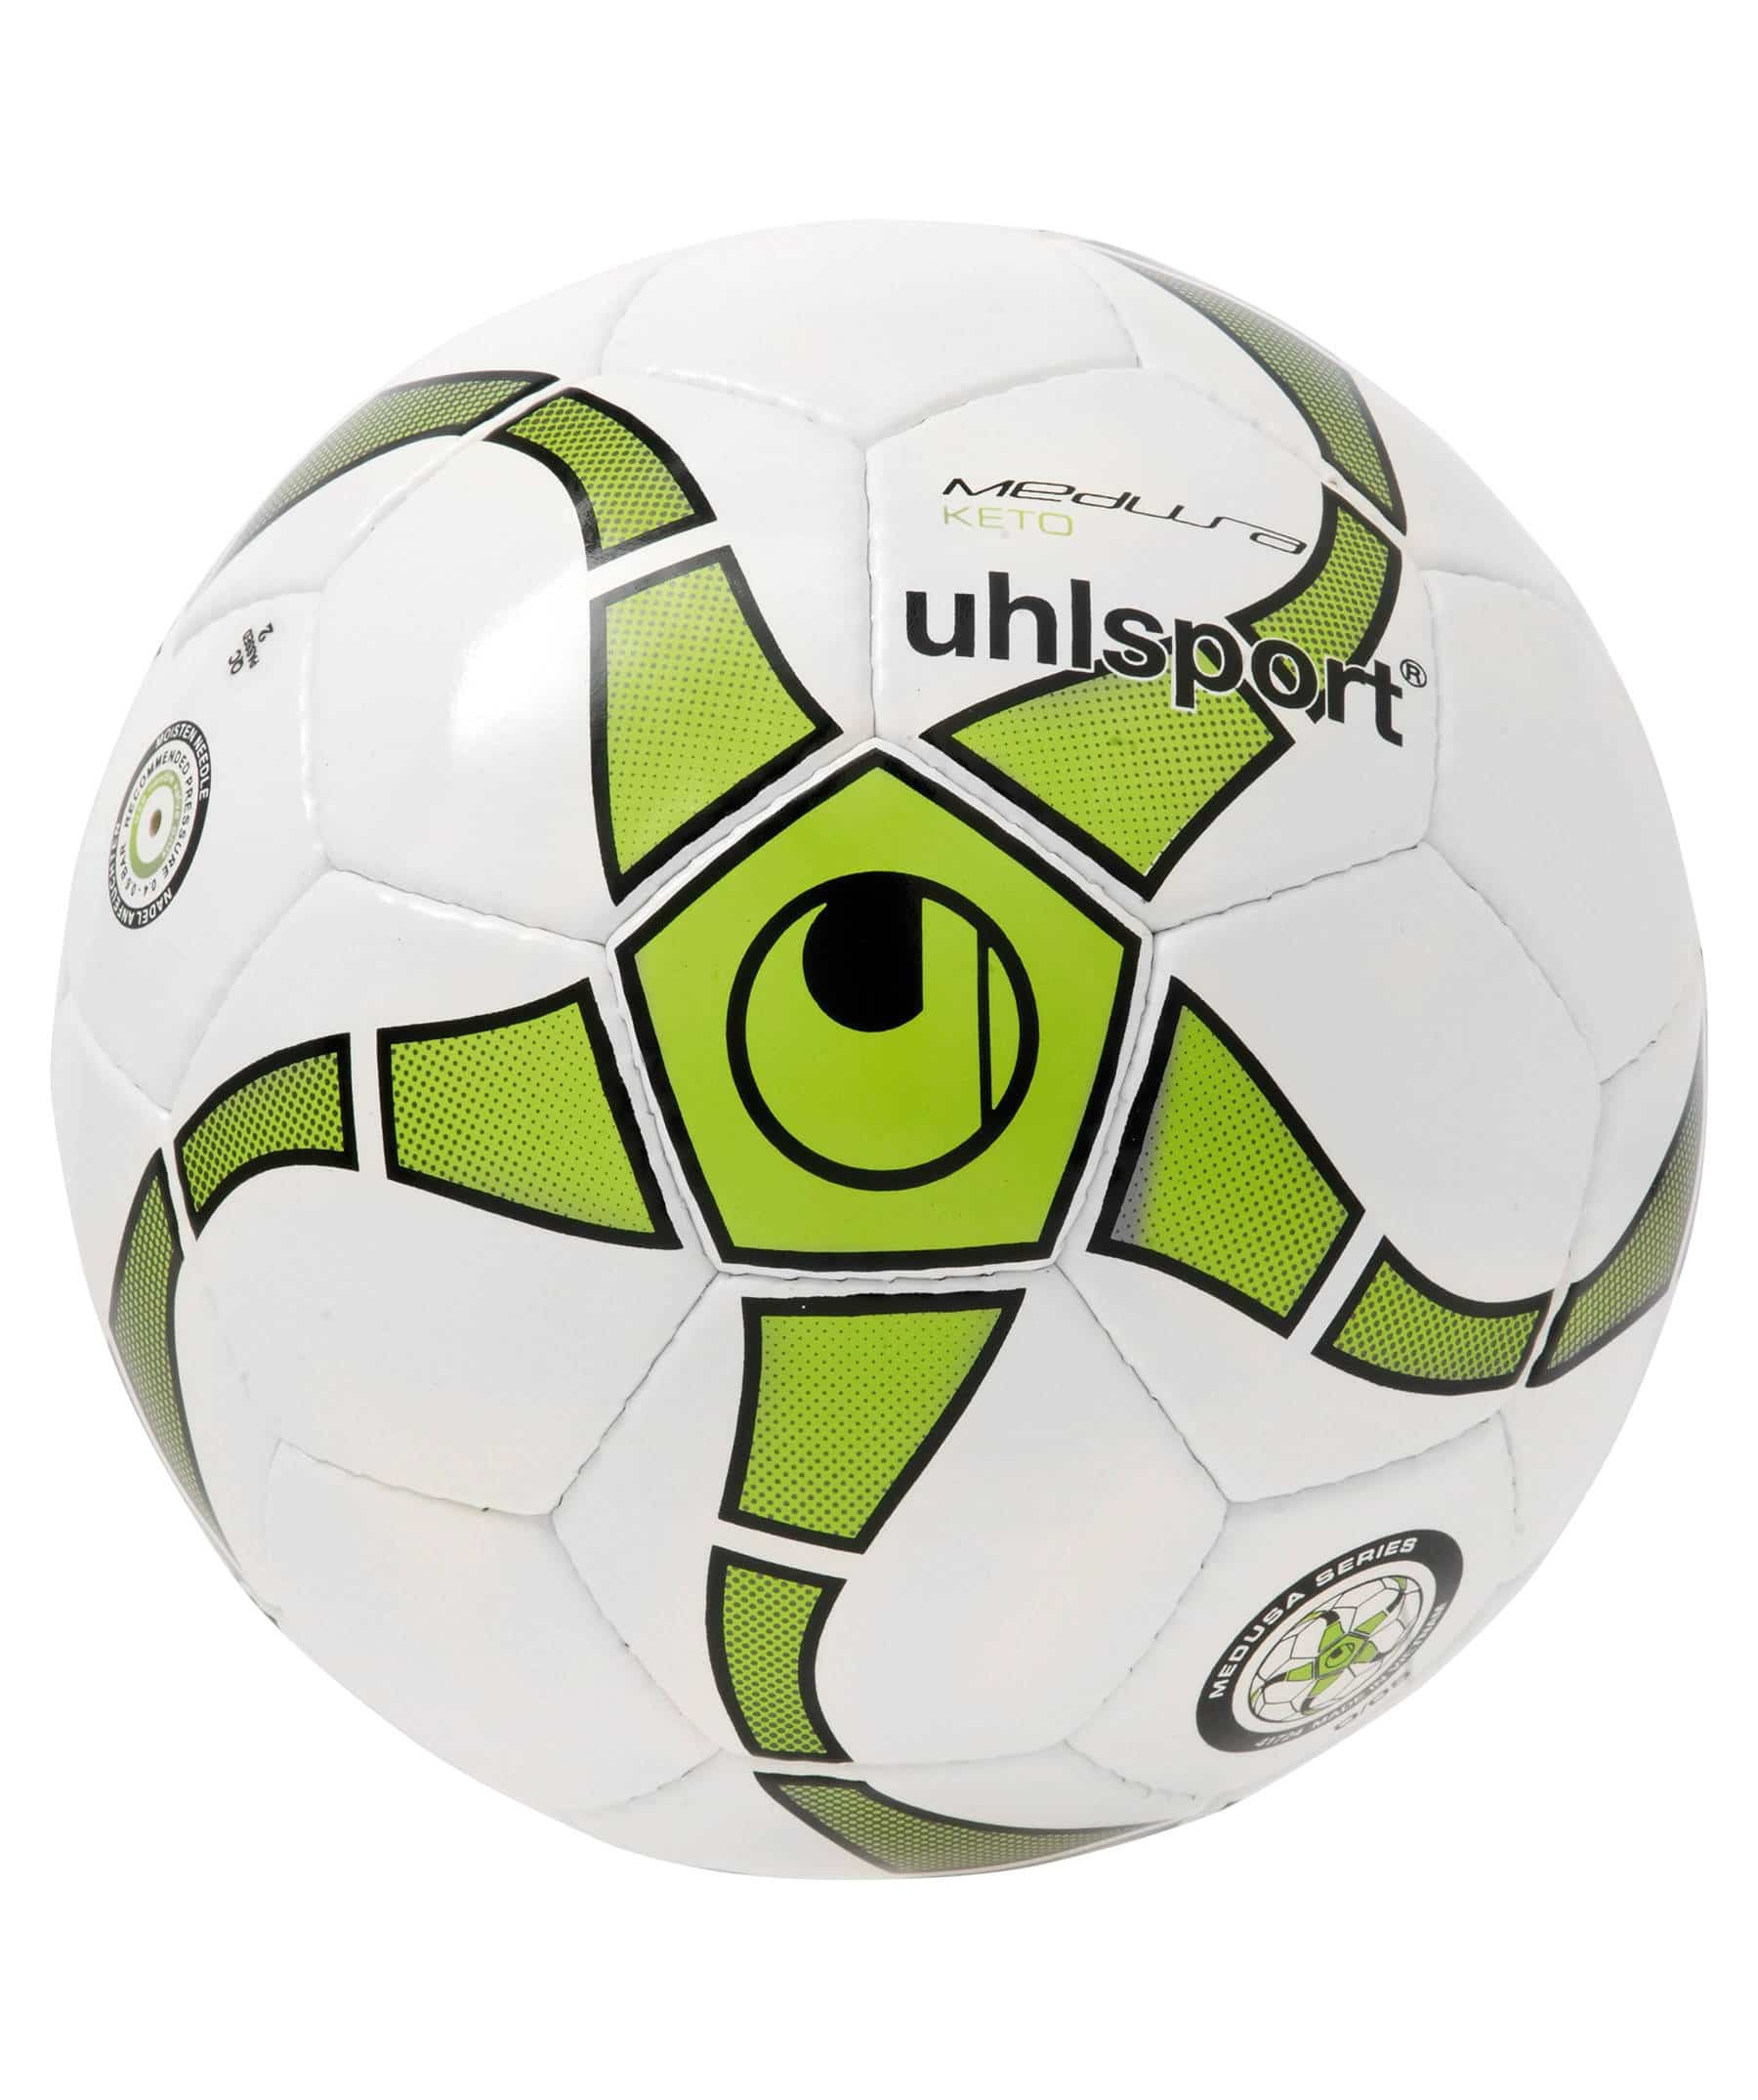 Futsal & Hallenfußball – So findest du das passende Schuhwerk